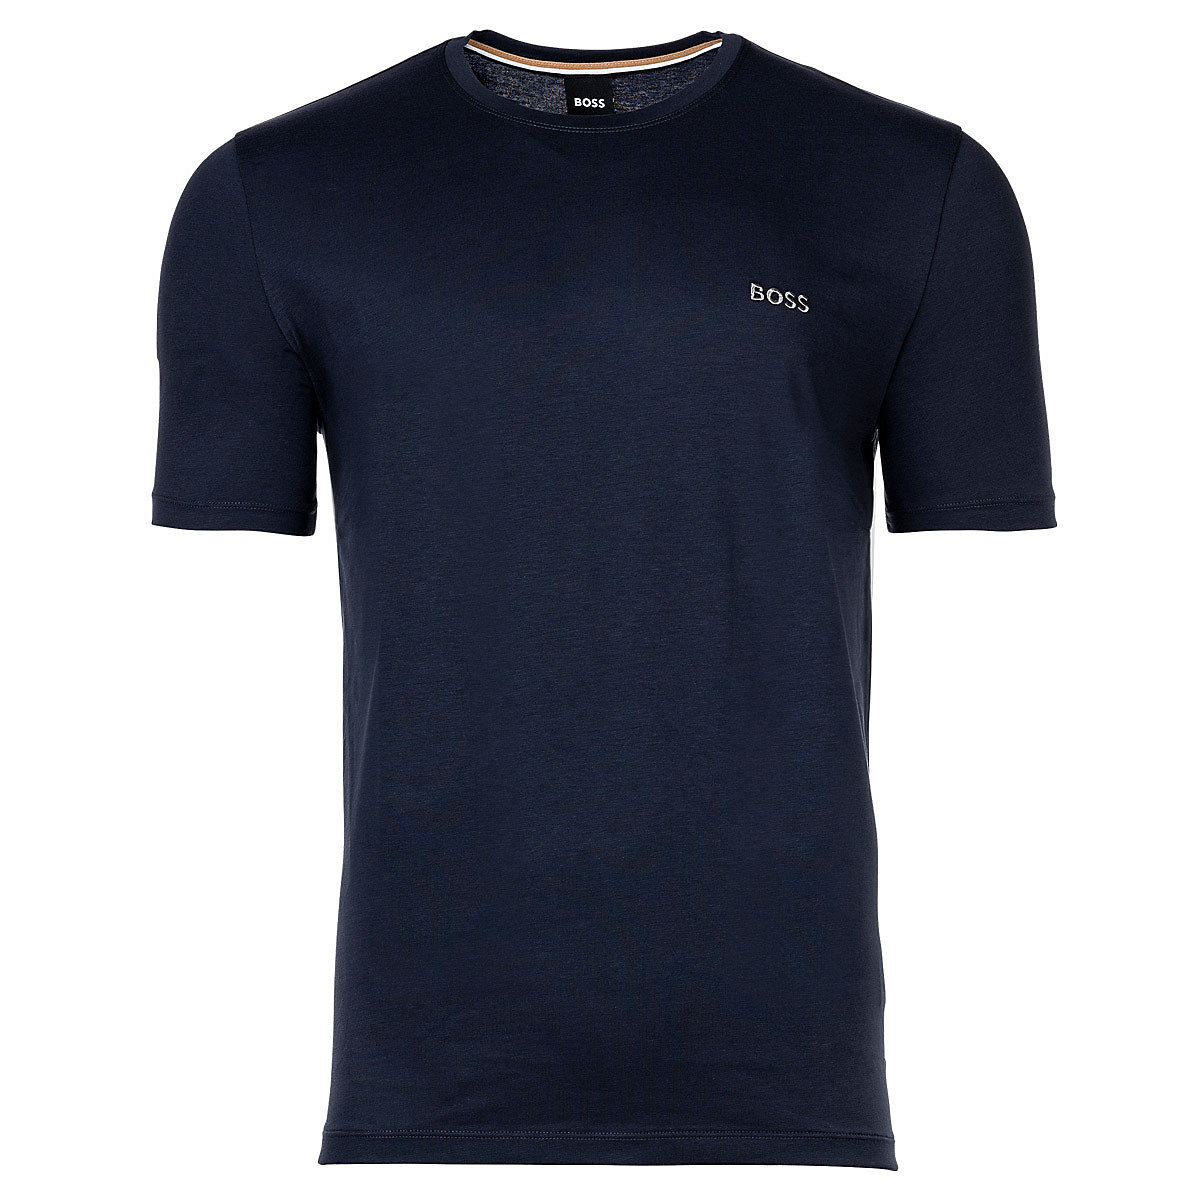 BOSS Herren T-Shirt Rundhals Mix & Match Baumwoll Stretch Logo T-Shirts dunkelblau